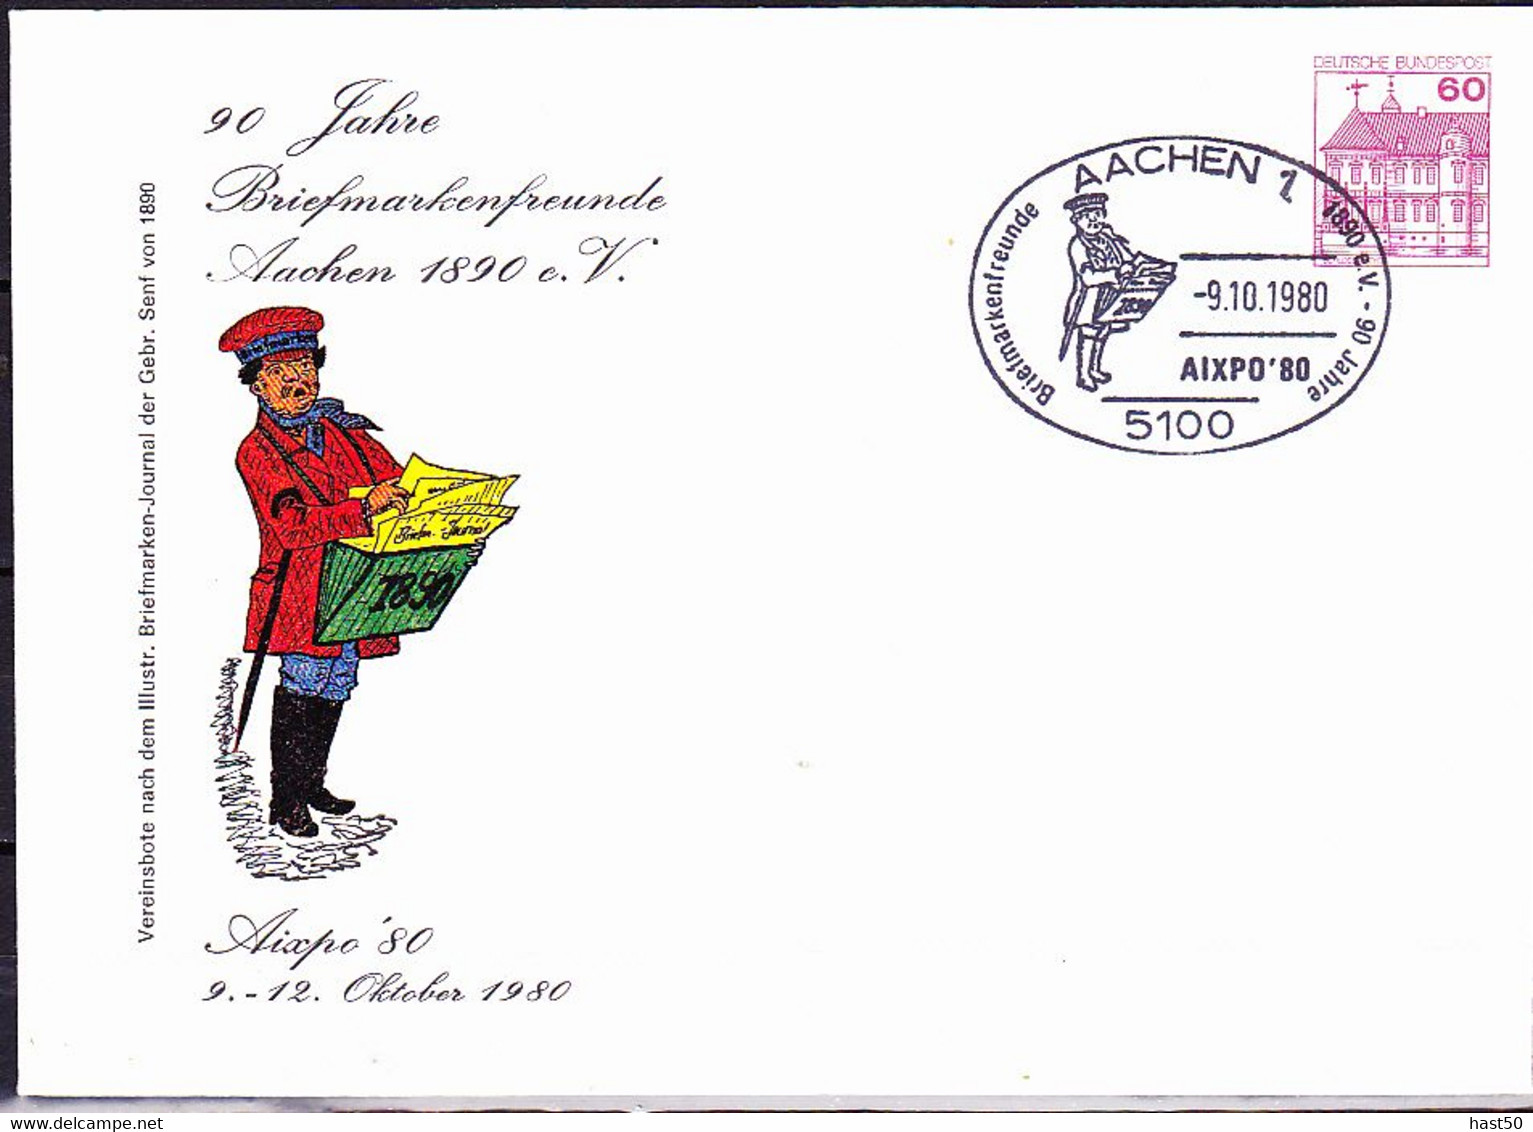 BRD FGR RFA - Privatumschlag 90 Jahre Briefmarkenfreunde (MiNr: PU 115 D1/001) 1980 - Sonderstempel Aachen - Private Covers - Used